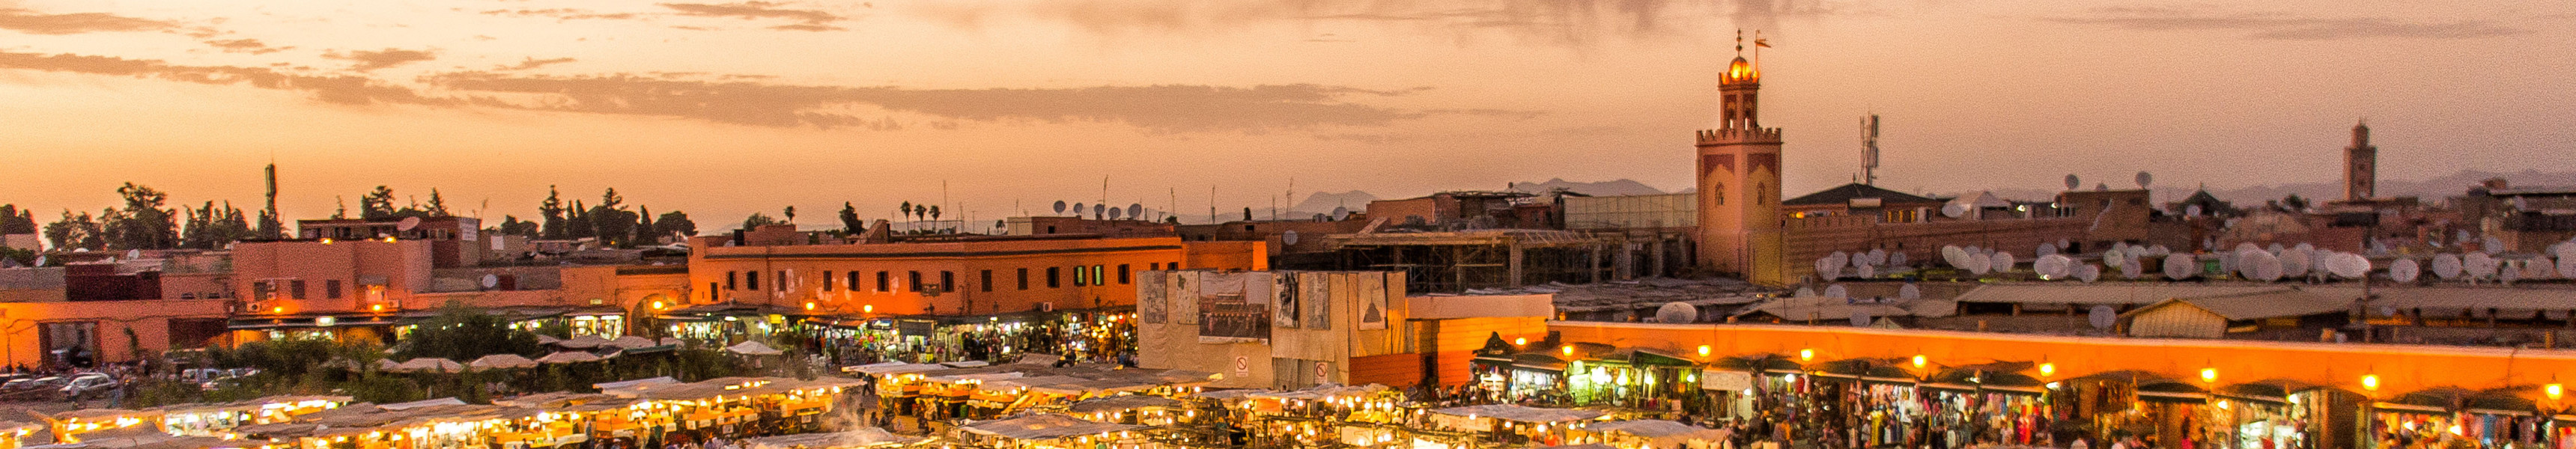 Blick auf die Stadt Marrakech bei Sonnenuntergang